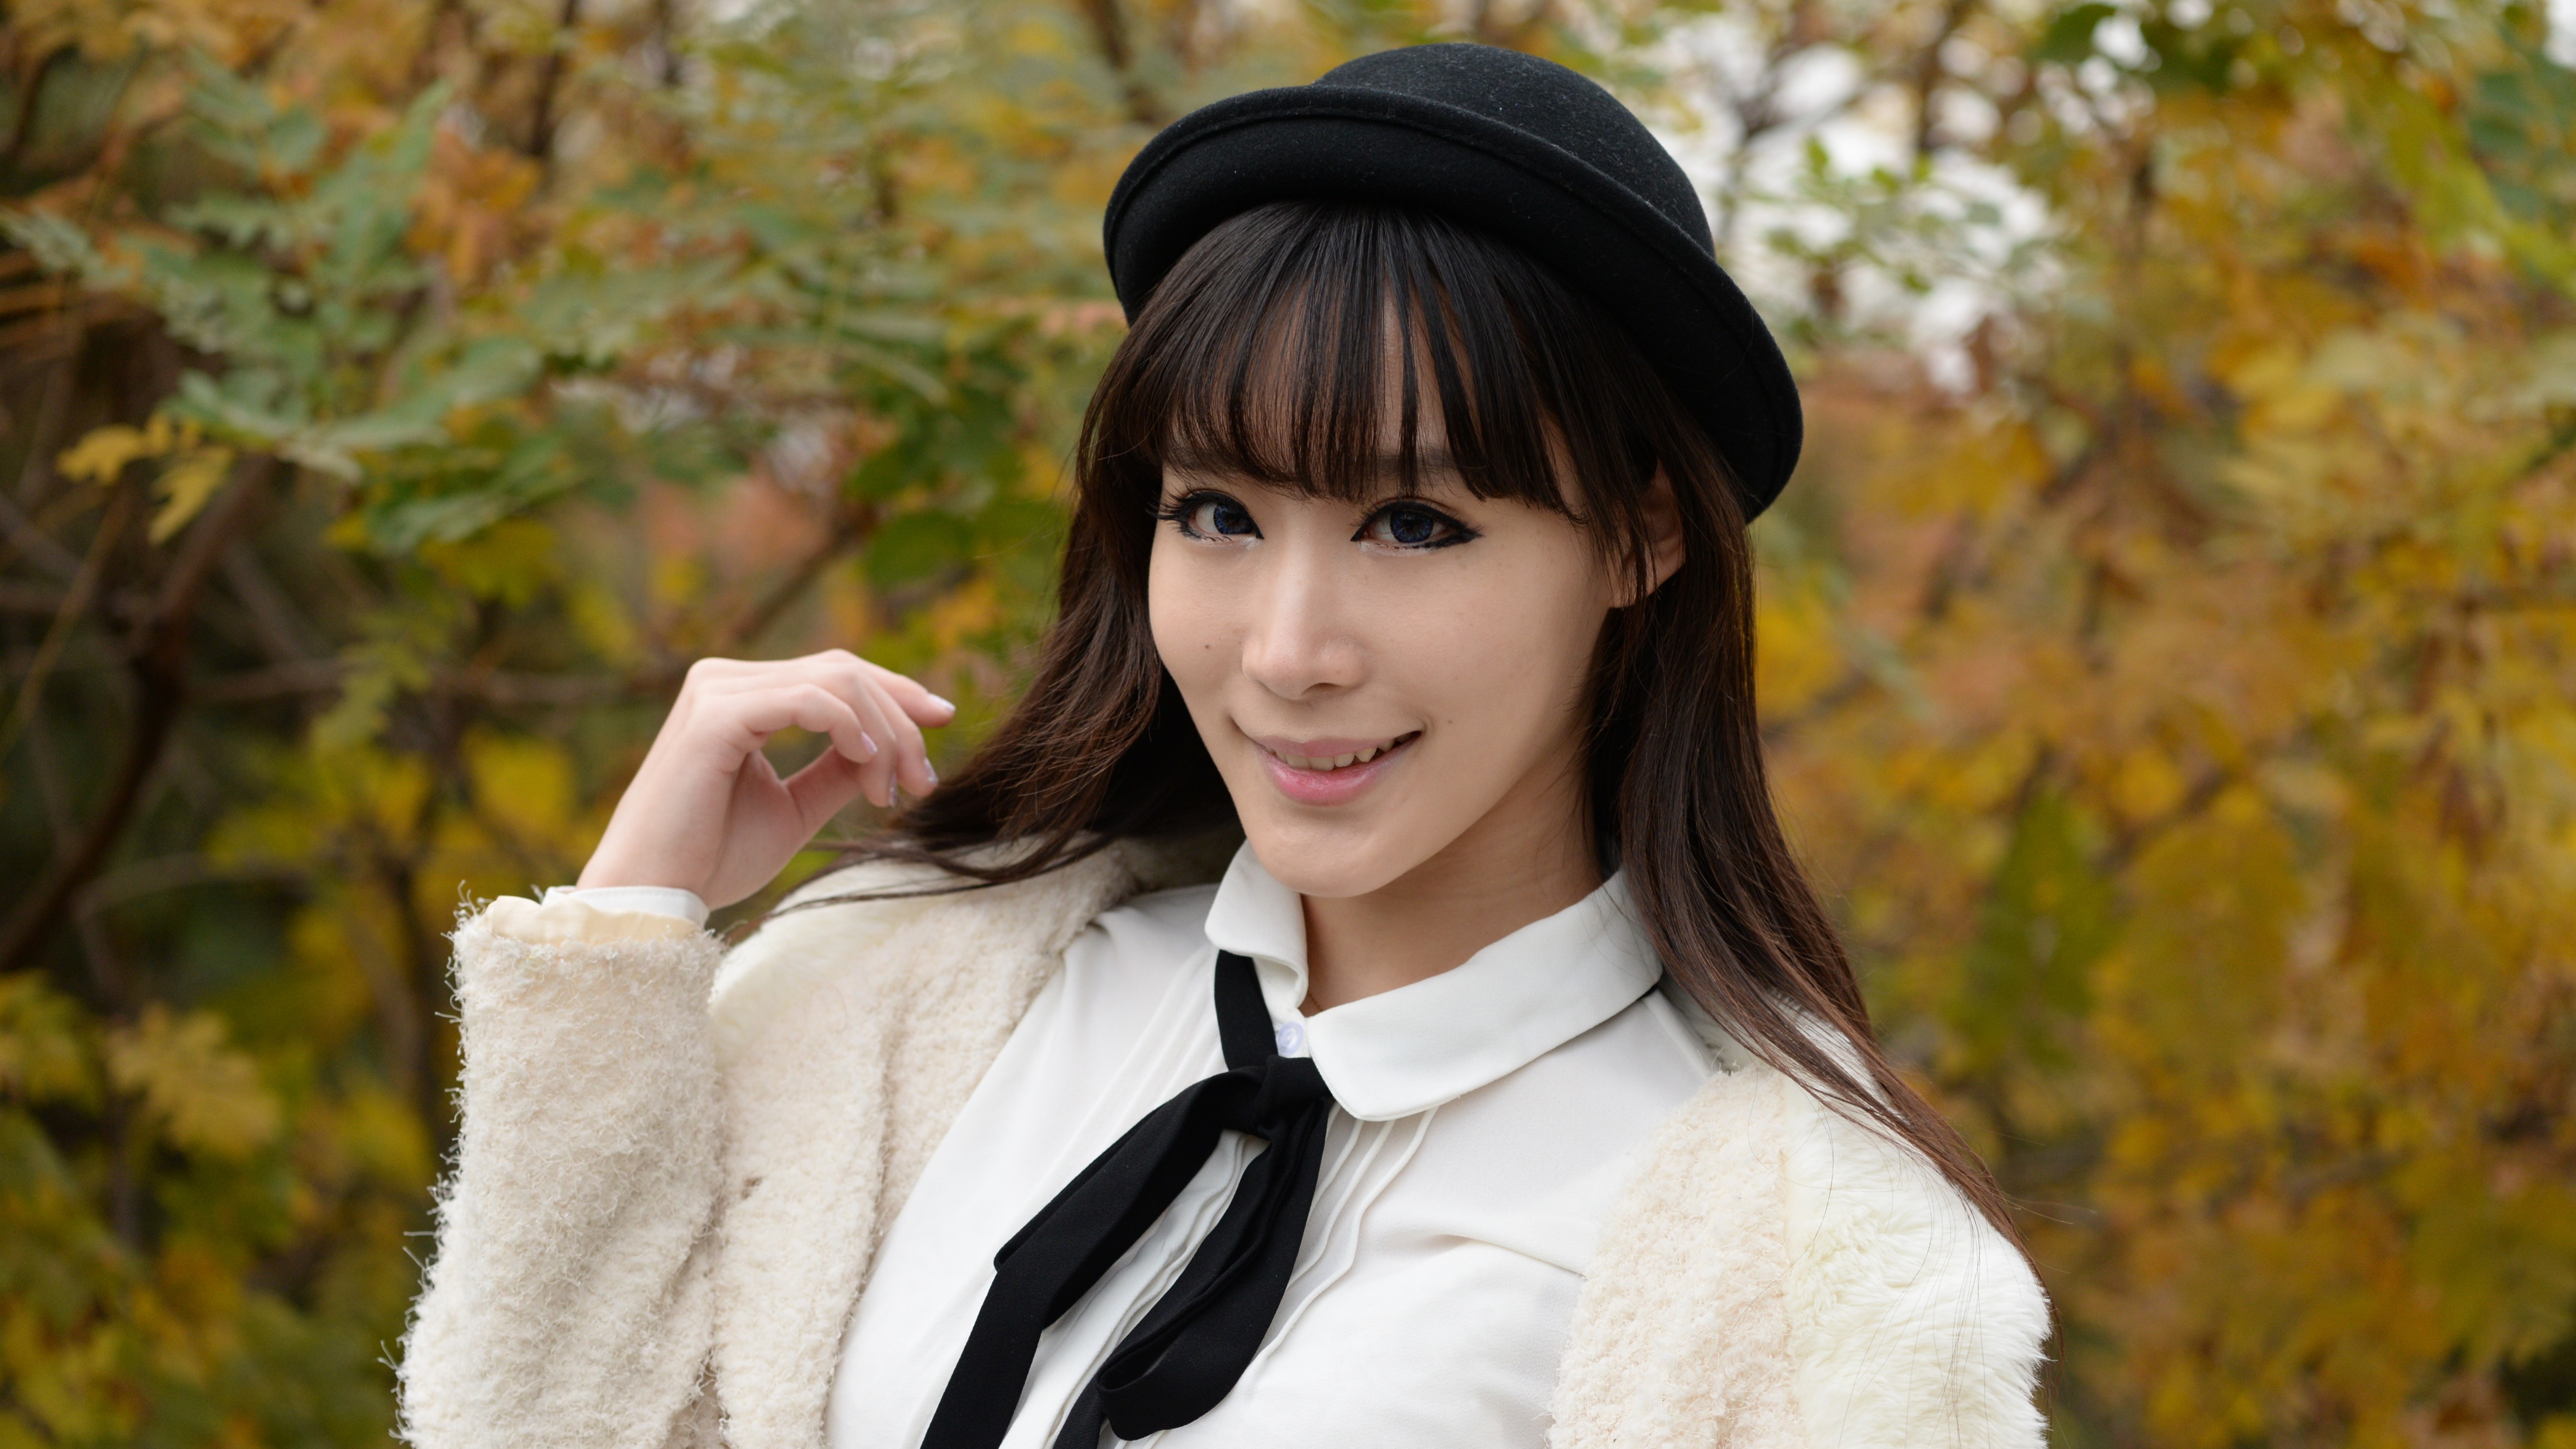 Wallpaper Chinese Girl, White Dress, Black Hat - Girl - HD Wallpaper 